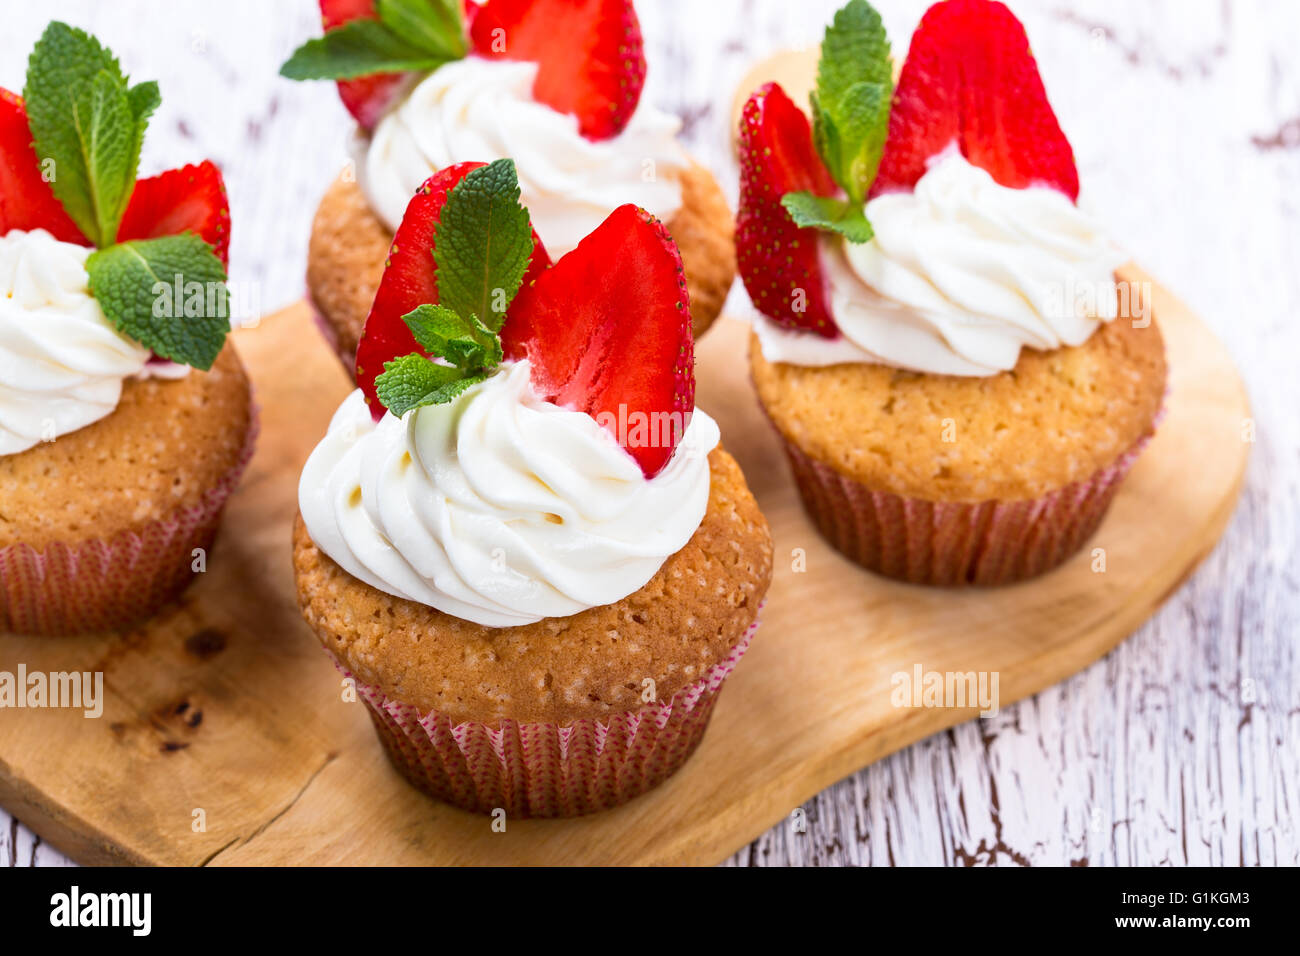 Cupcakes buttercream casero con fresas y menta fresca sobre mesa de madera blanca Foto de stock